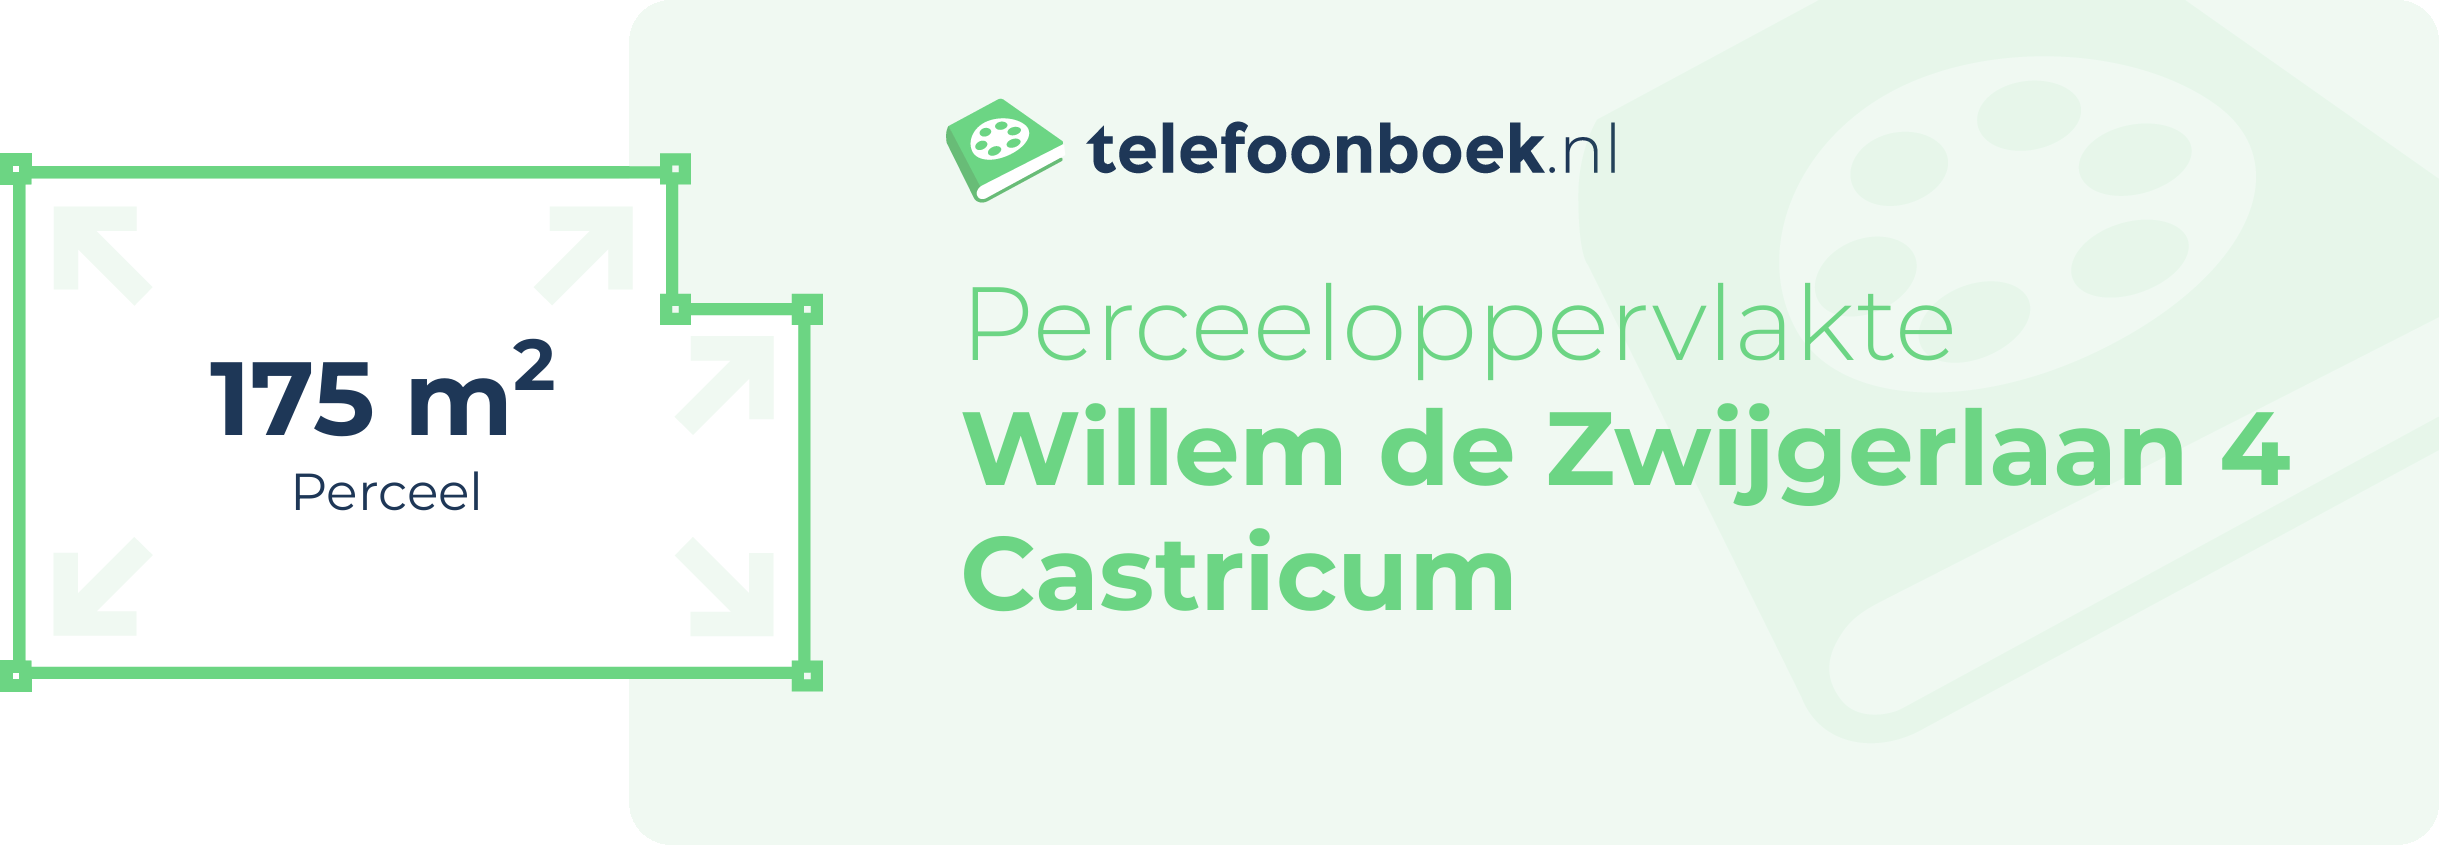 Perceeloppervlakte Willem De Zwijgerlaan 4 Castricum